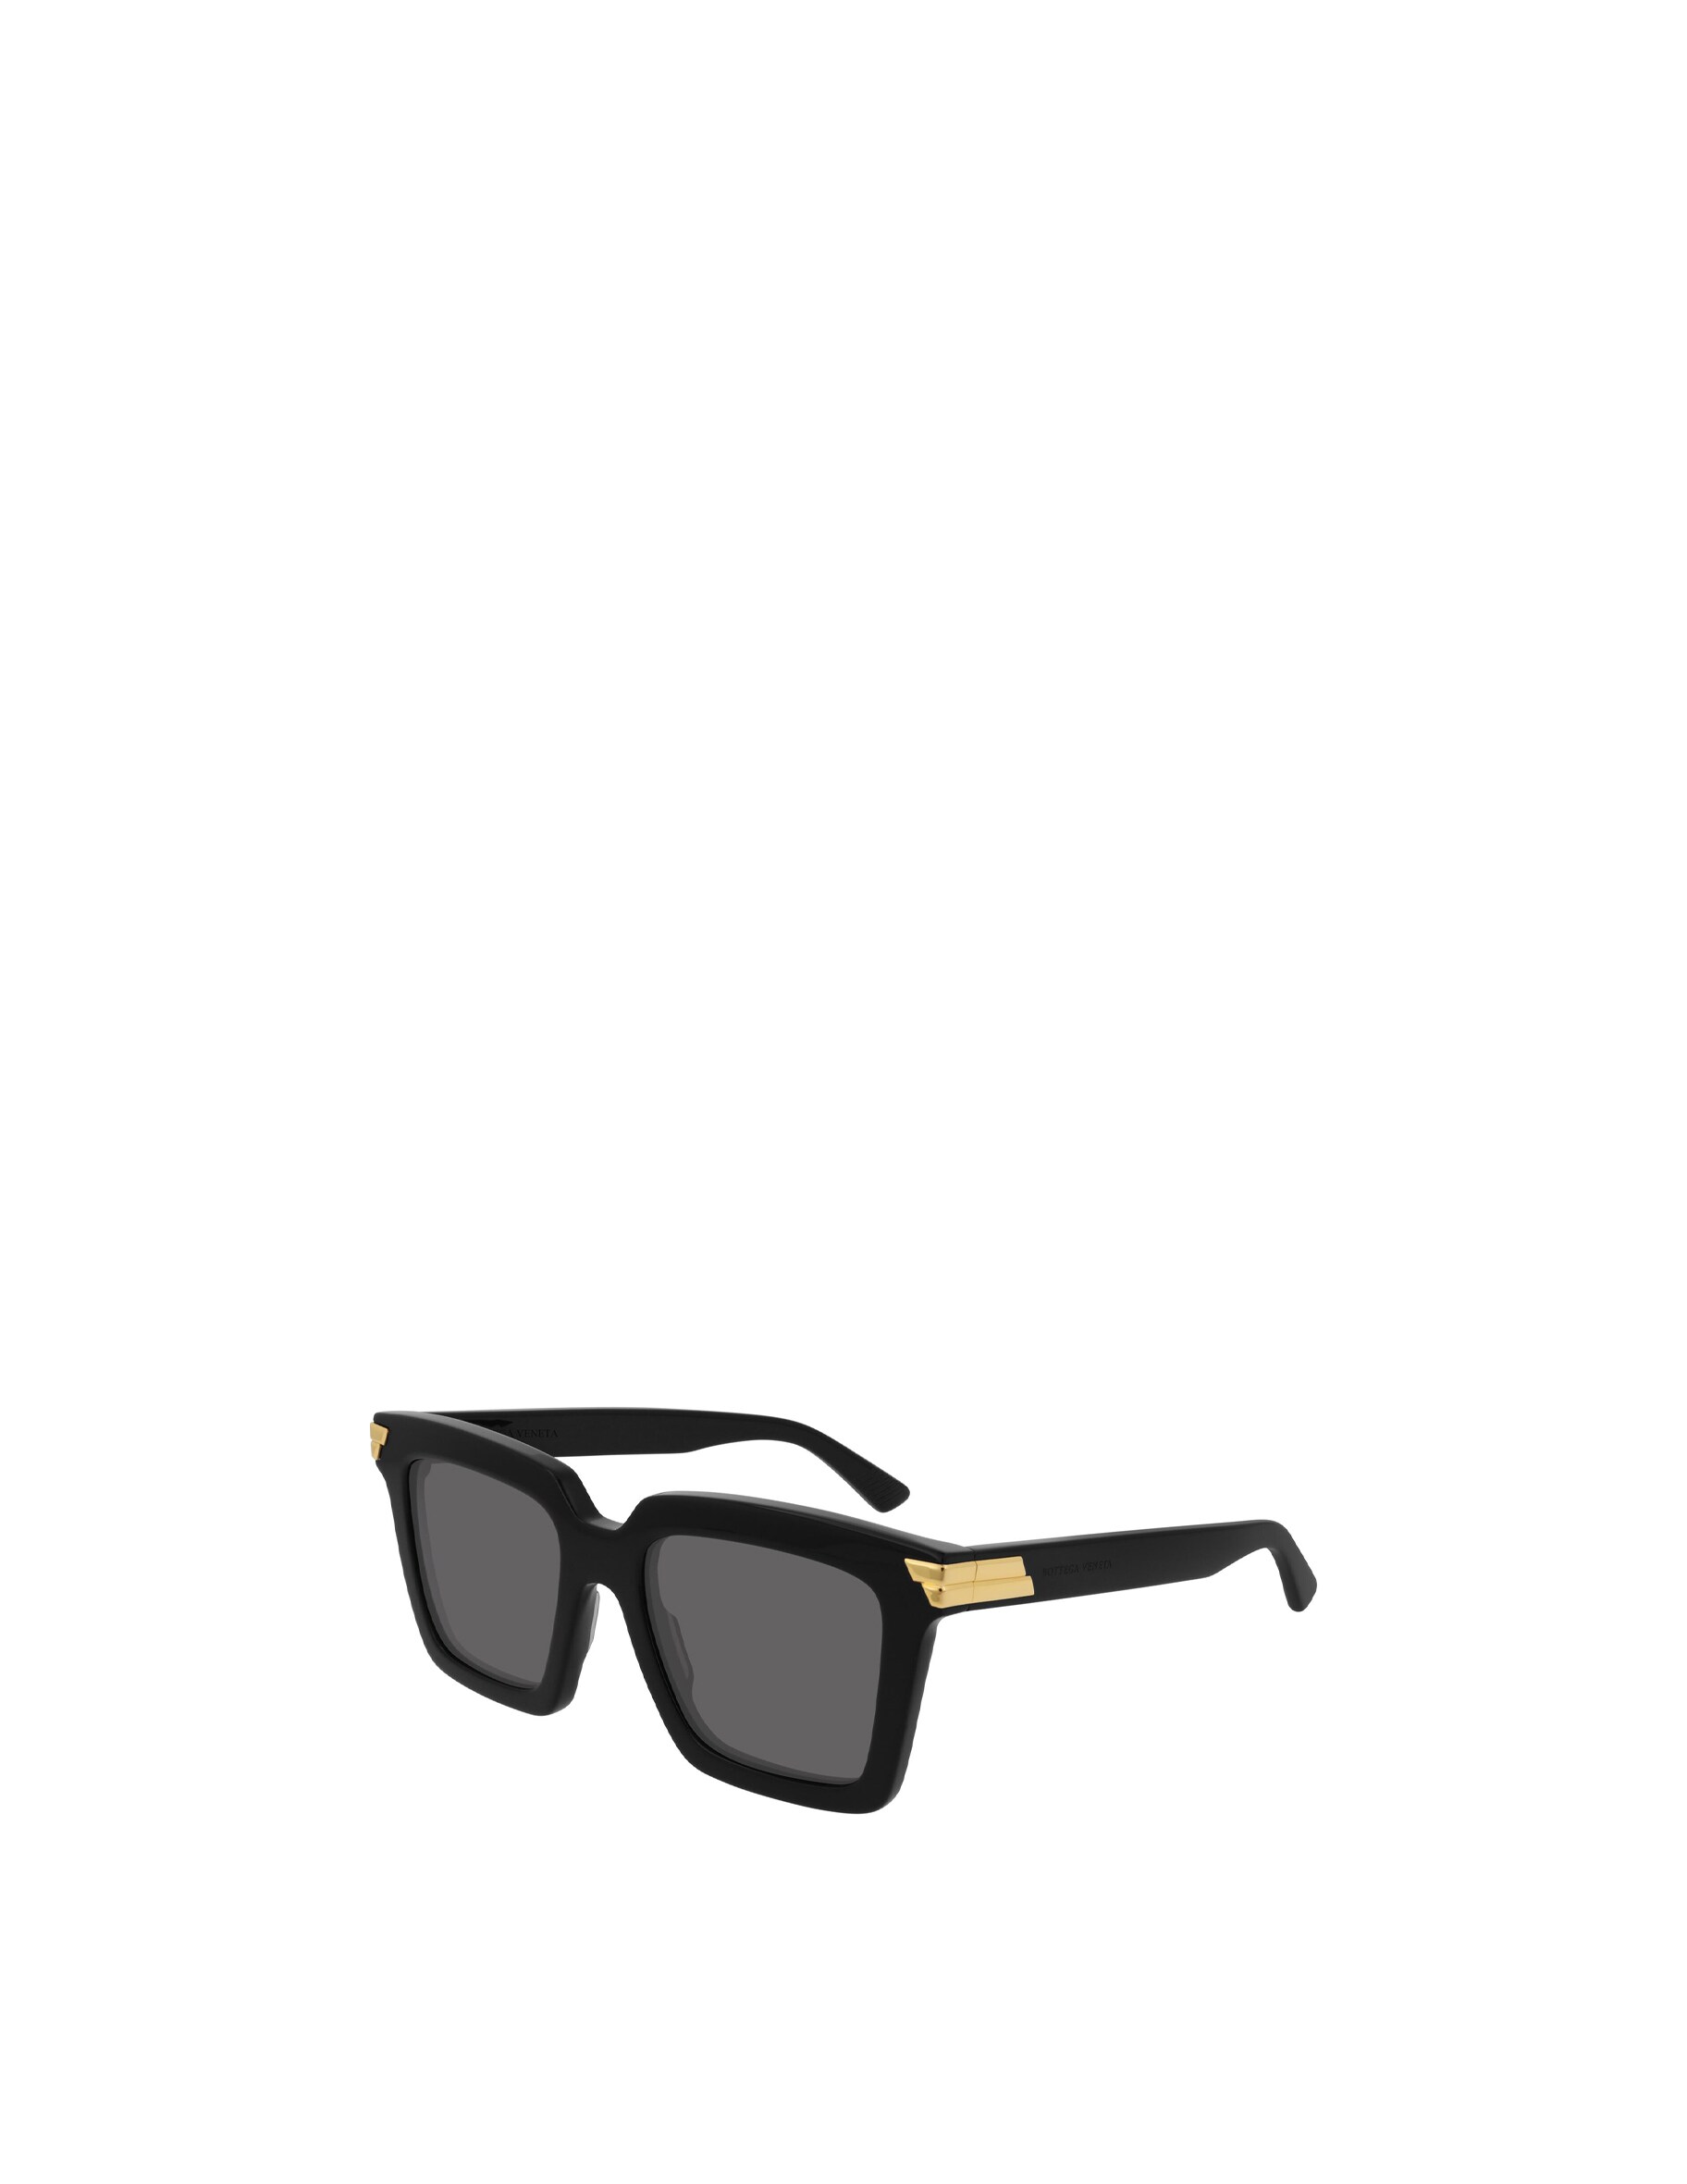 Женственные солнцезащитные очки квадратной формы BV1005S Bottega Veneta, цвет Shiny Black солнцезащитные очки bottega veneta square цвет shiny black